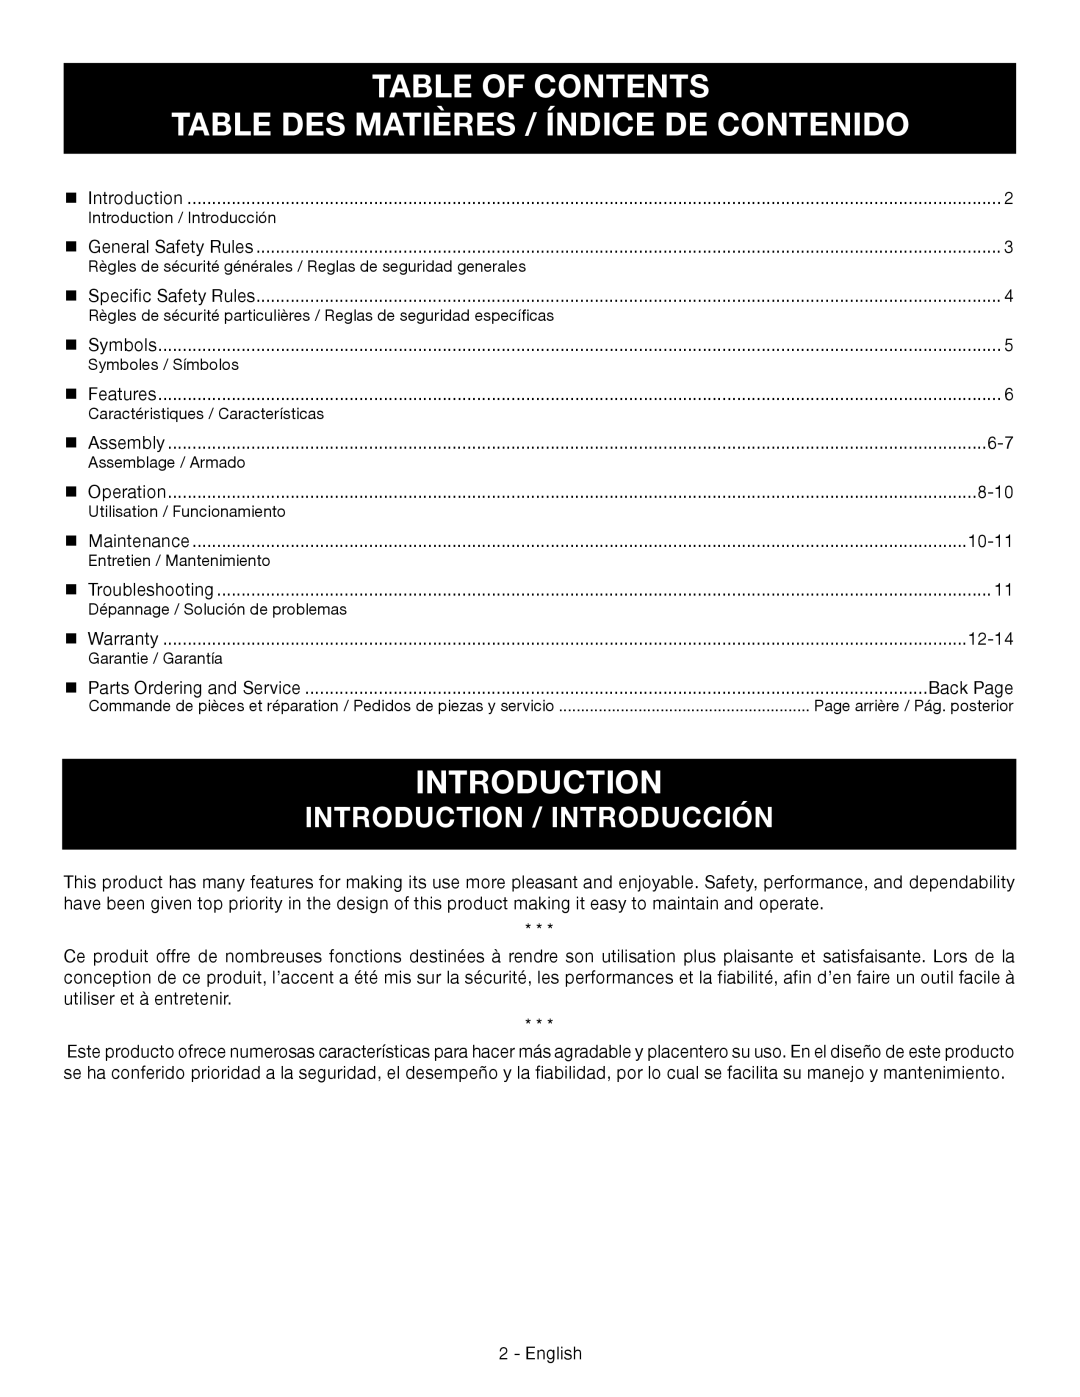 Ryobi RY09051 Table Of Contents Table Des Matières / Índice De Contenido, Introduction / Introducción 